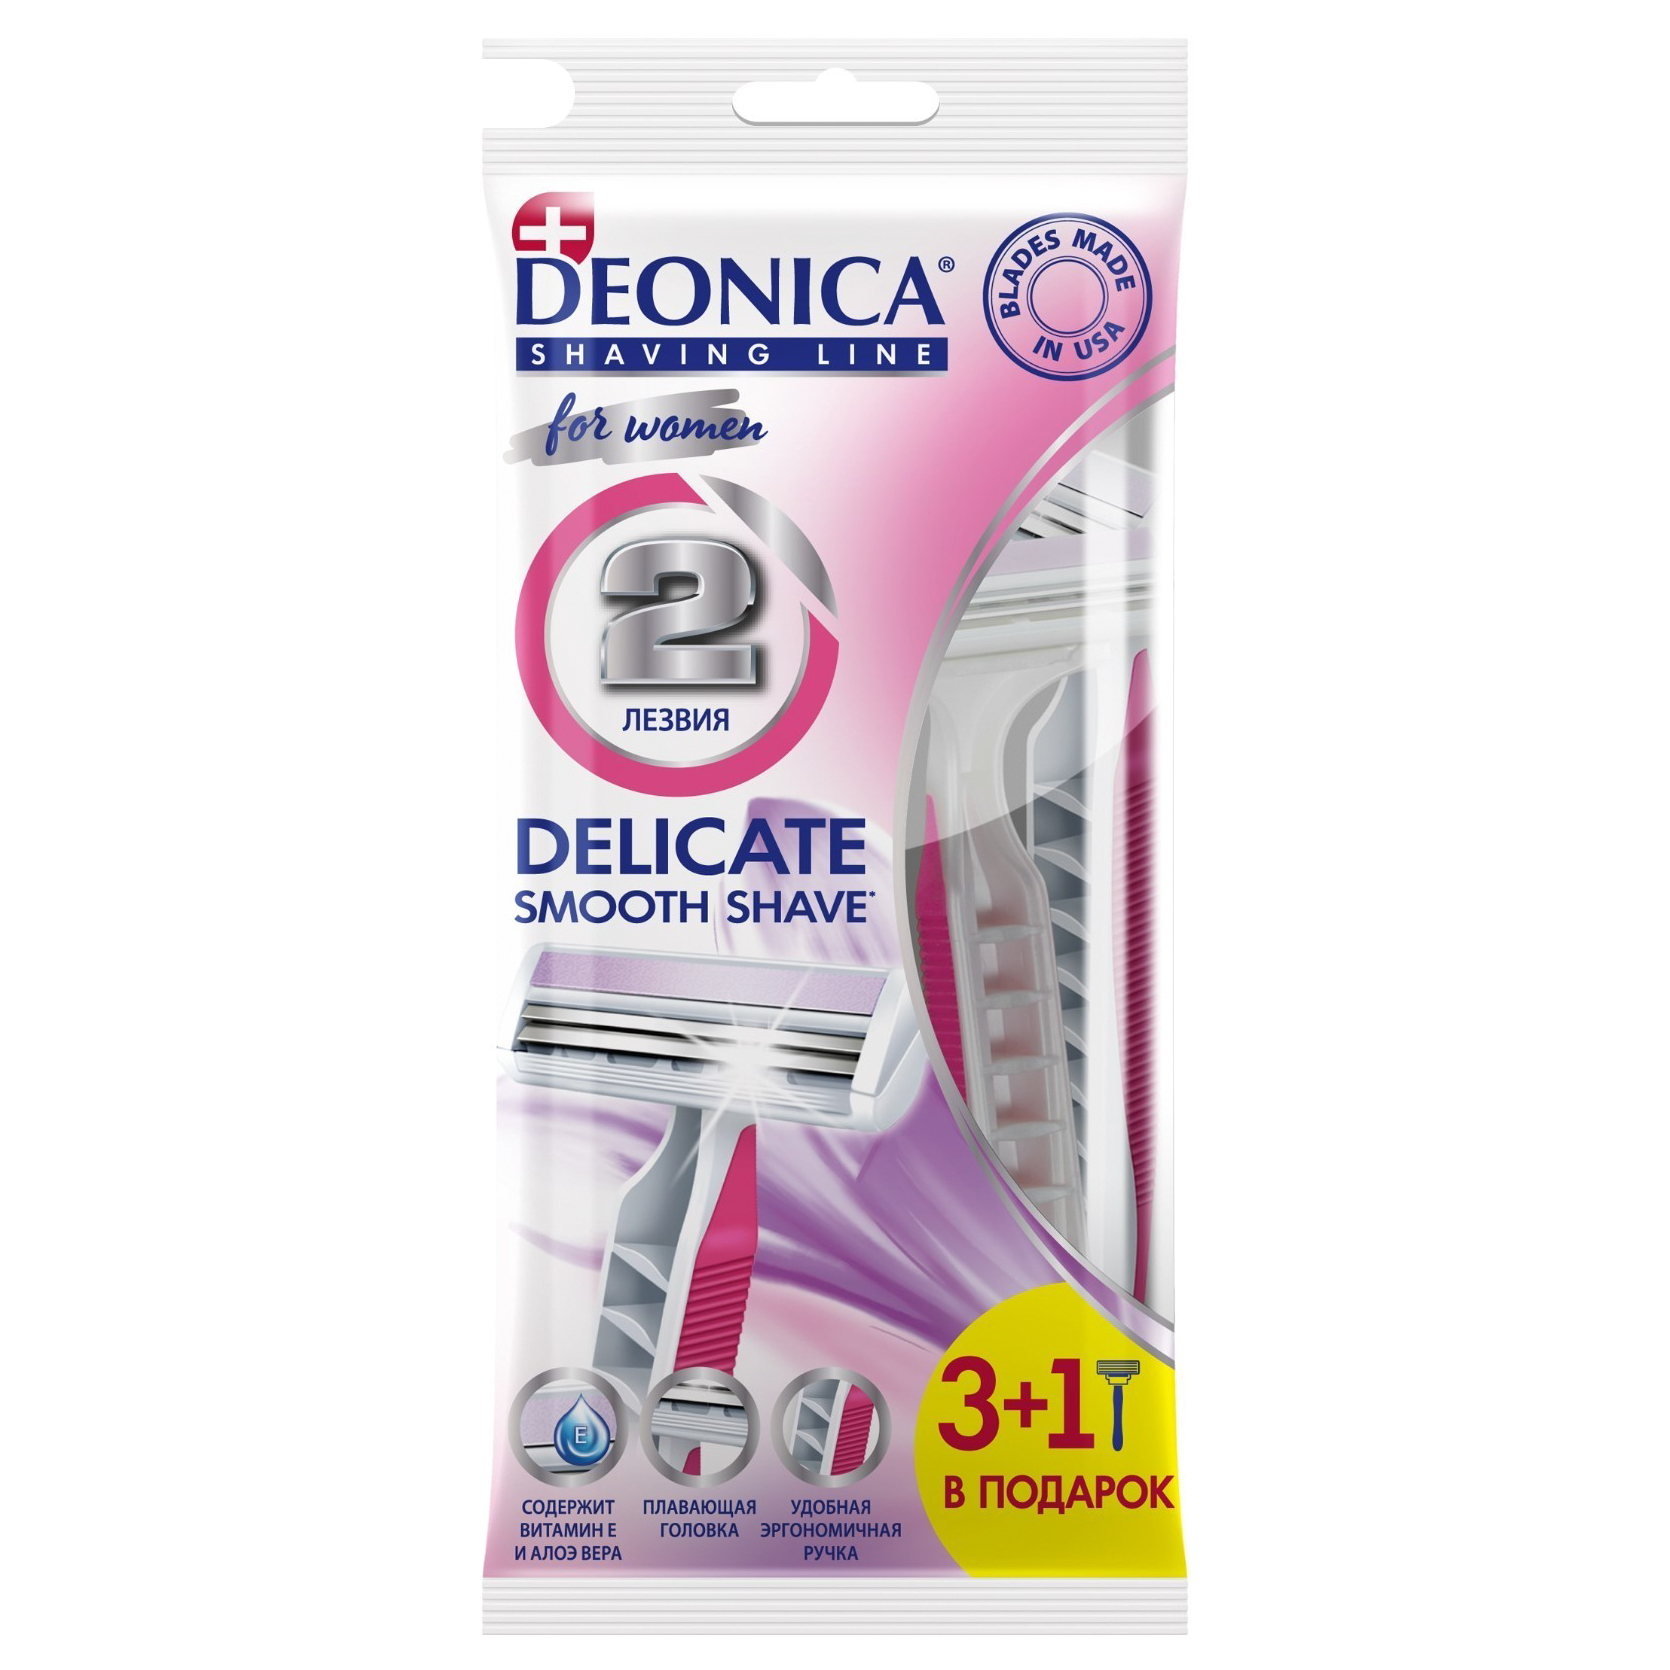 Станок для бритья одноразовый Deonica 2 For Women 3+1 шт cтанок т образный для бритья merkur 90701001